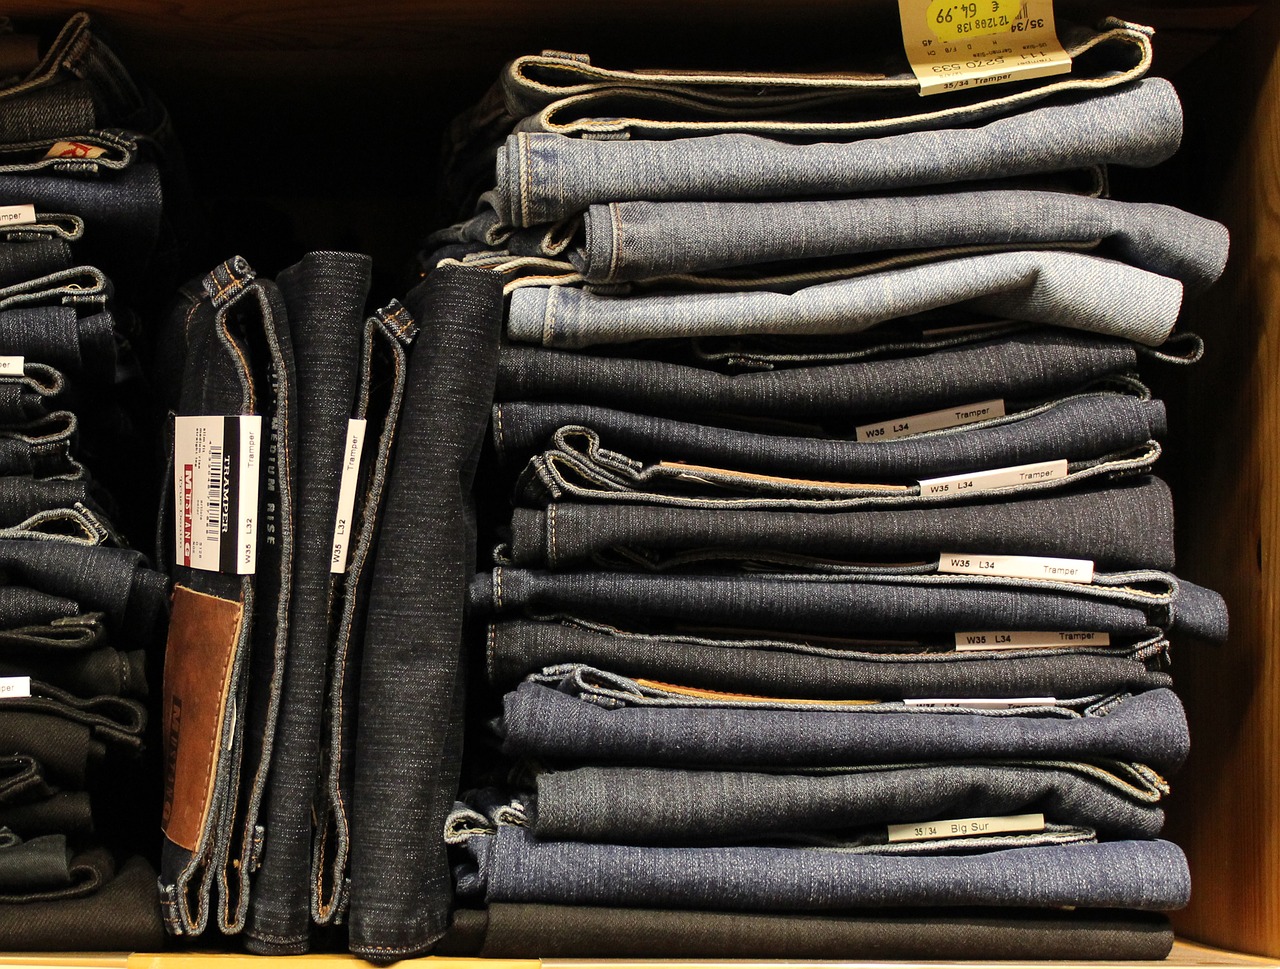 jeans shop cloths free photo